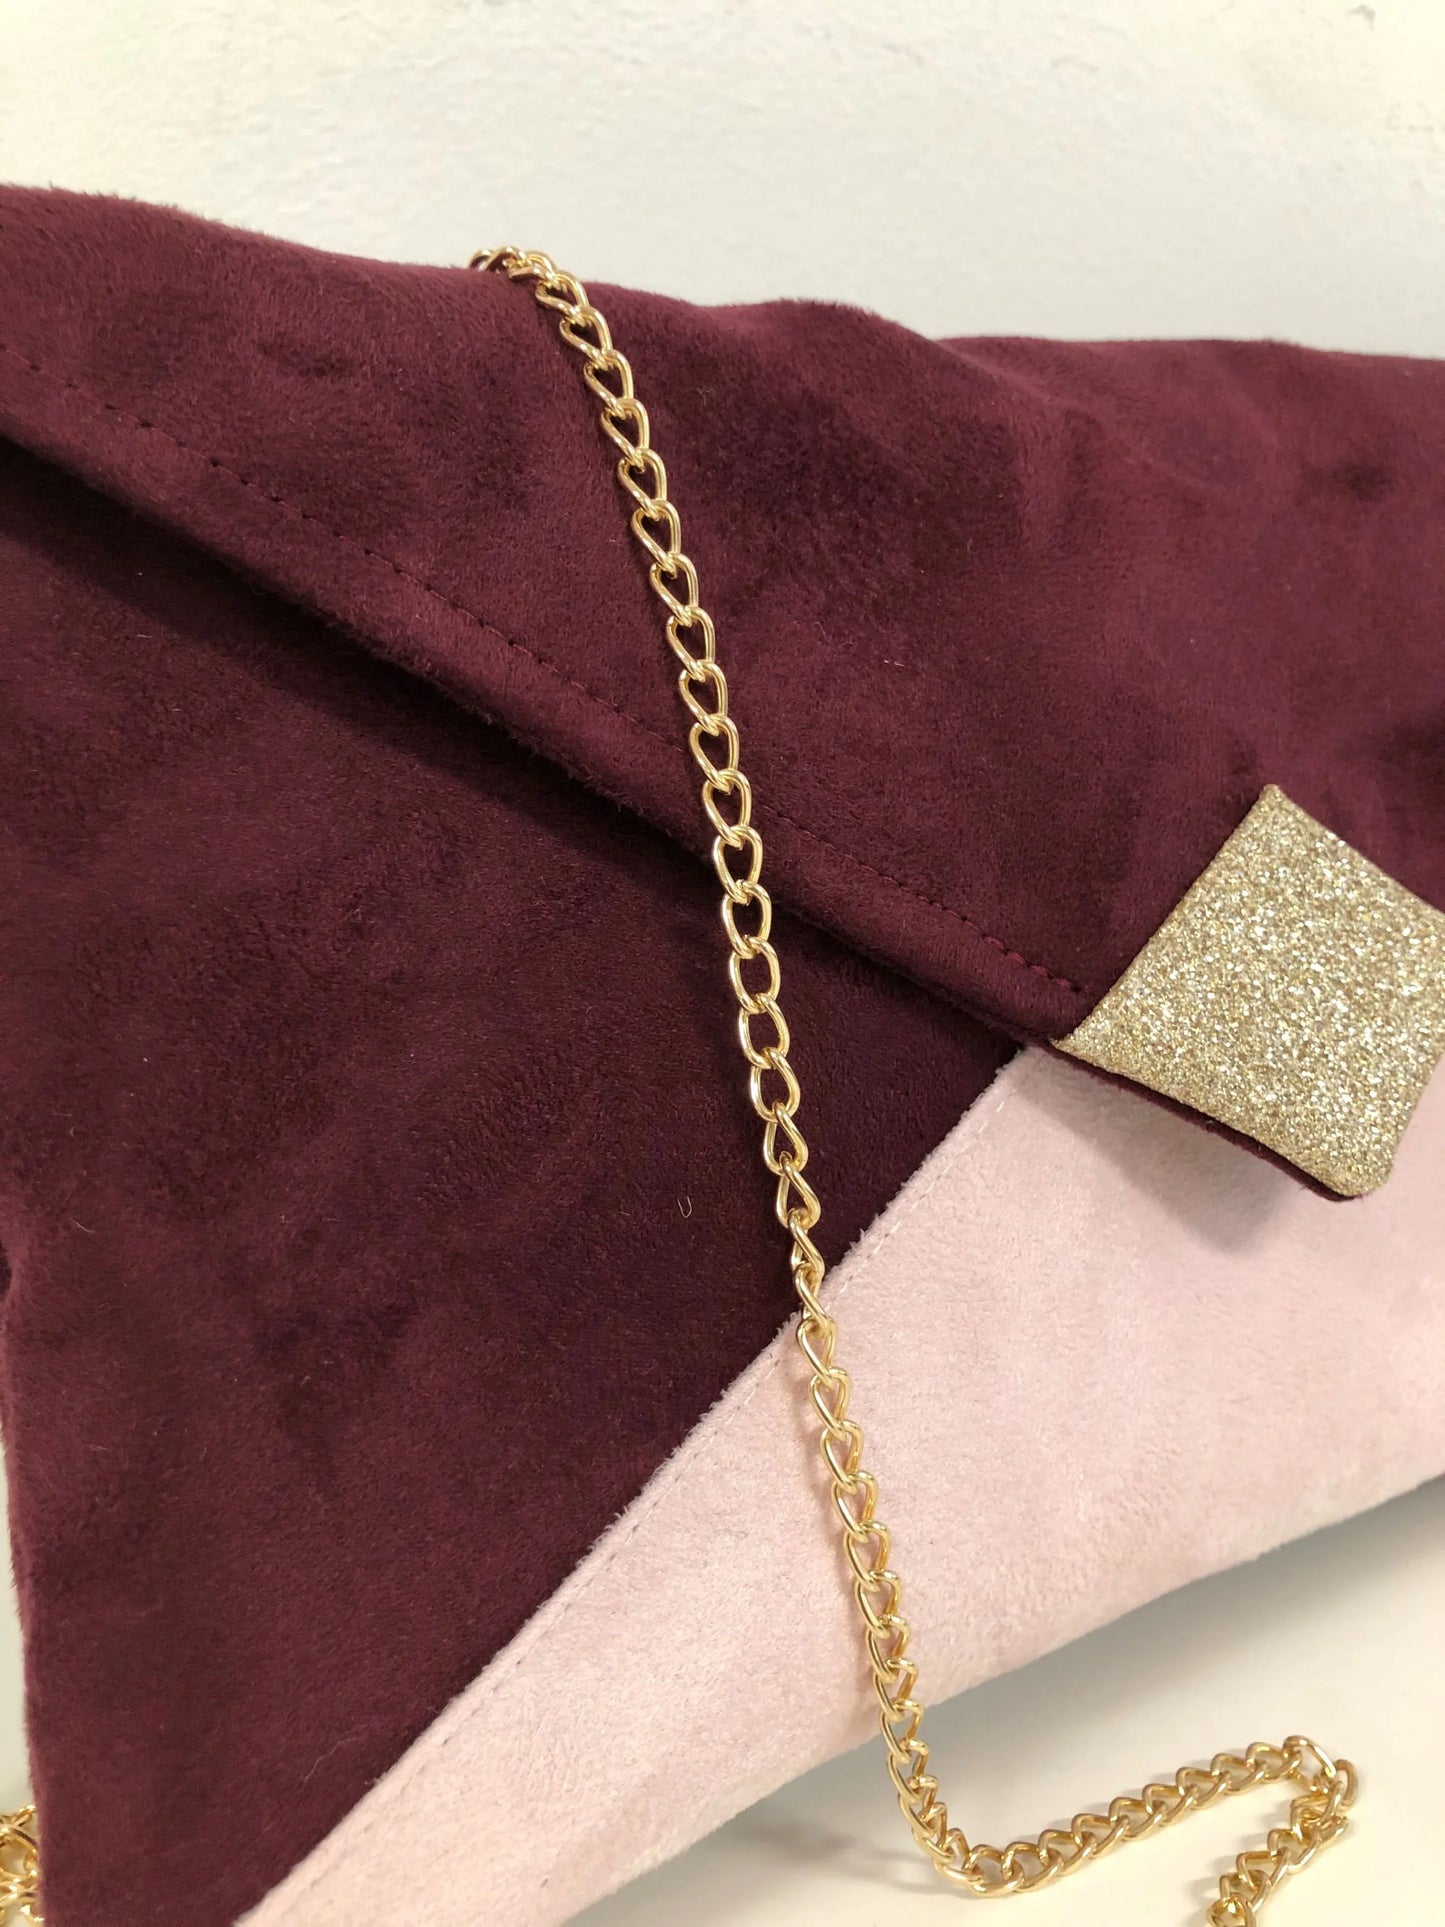 Vue de près du sac pochette Isa bordeaux et rose pâle à paillettes dorées